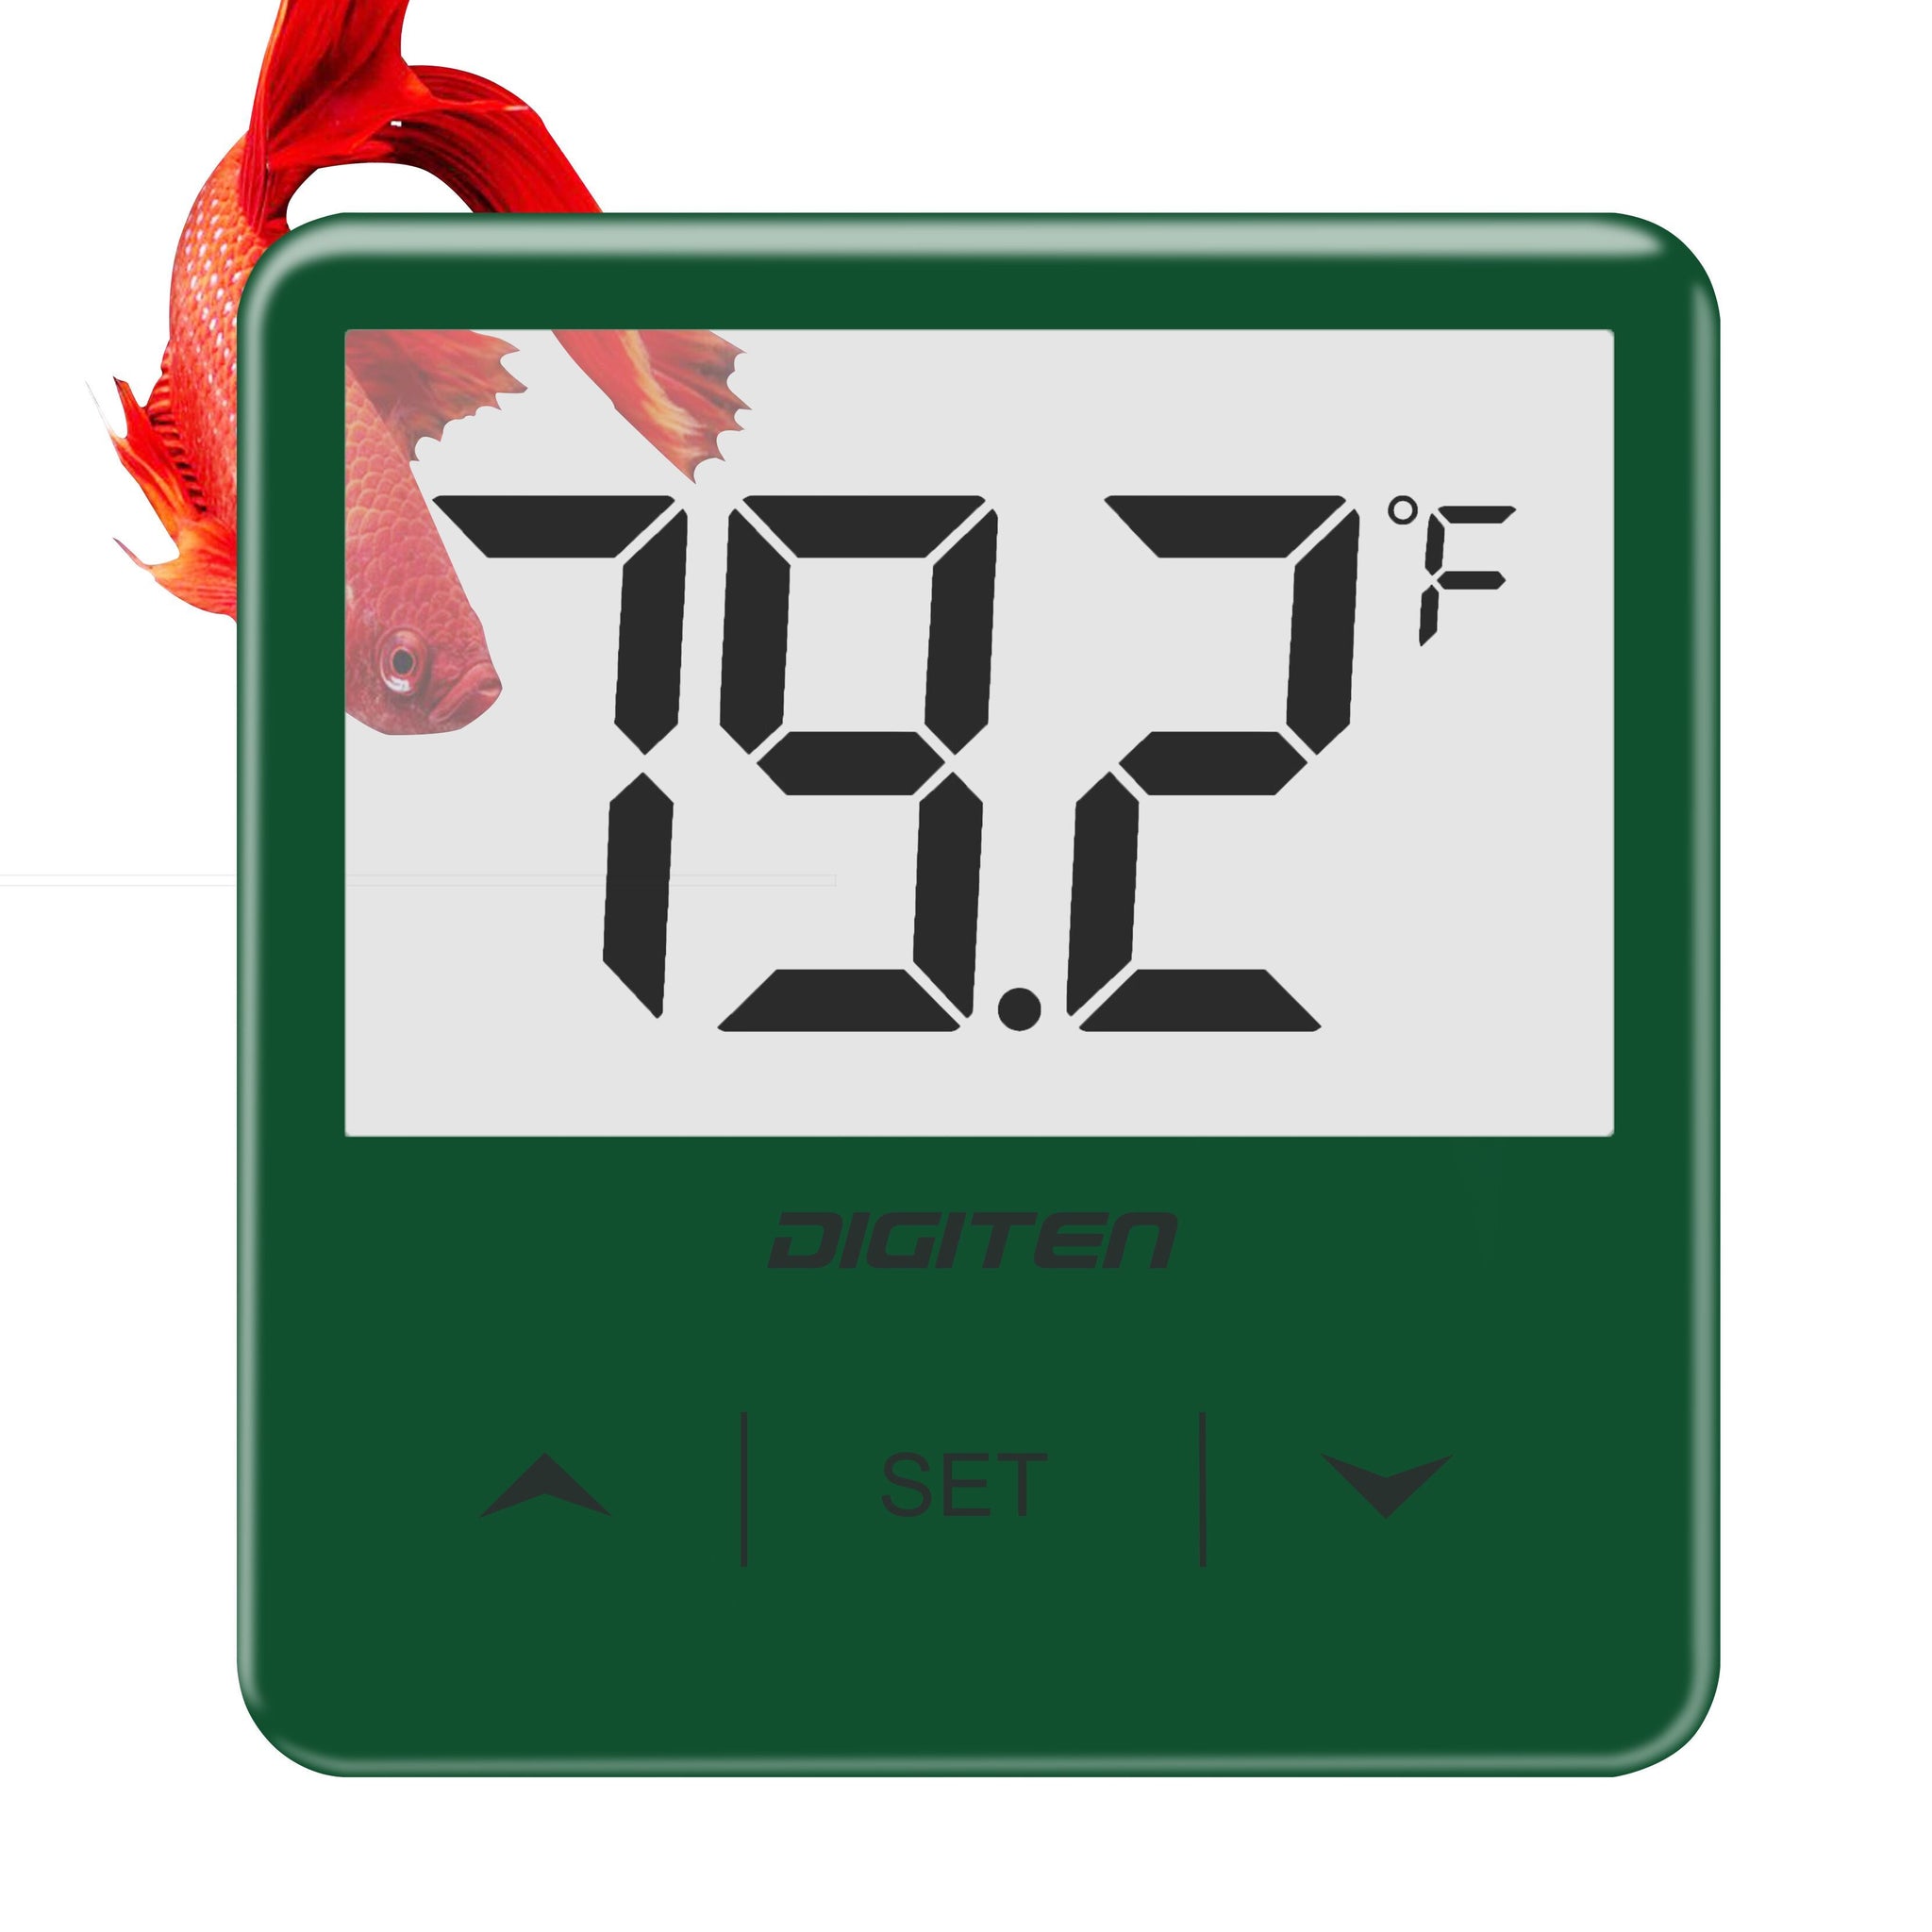 Digital Aquarium Thermometer - Measure Water Temperature